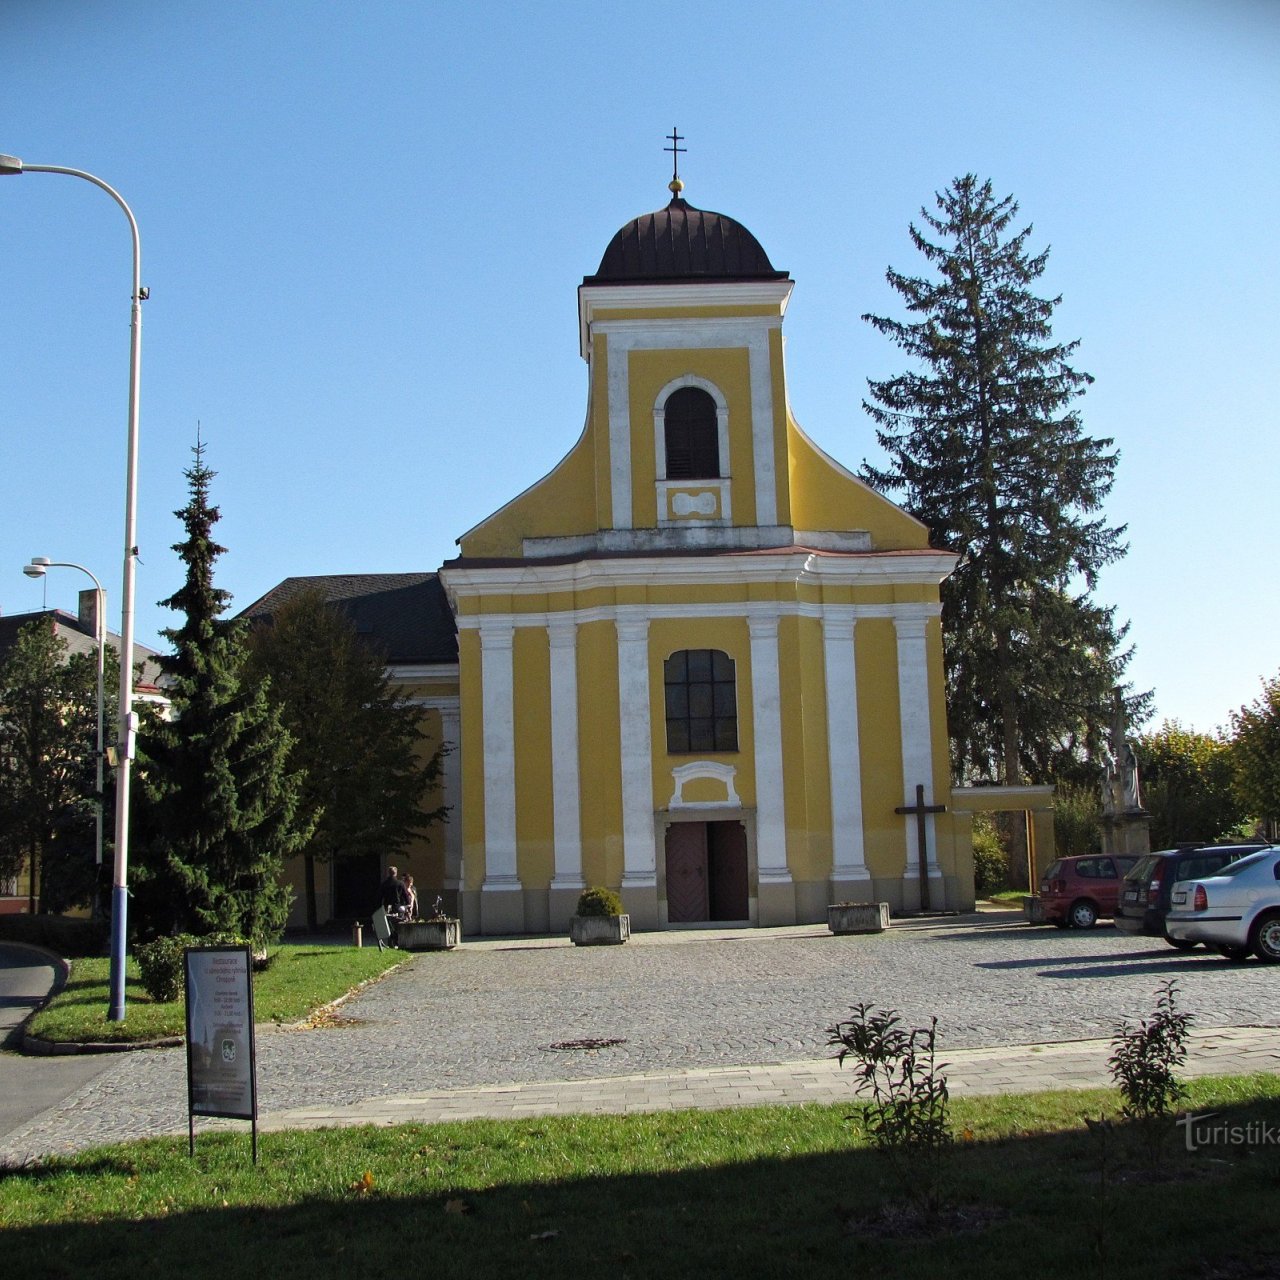 Chropyně - kostel sv.Jiljí